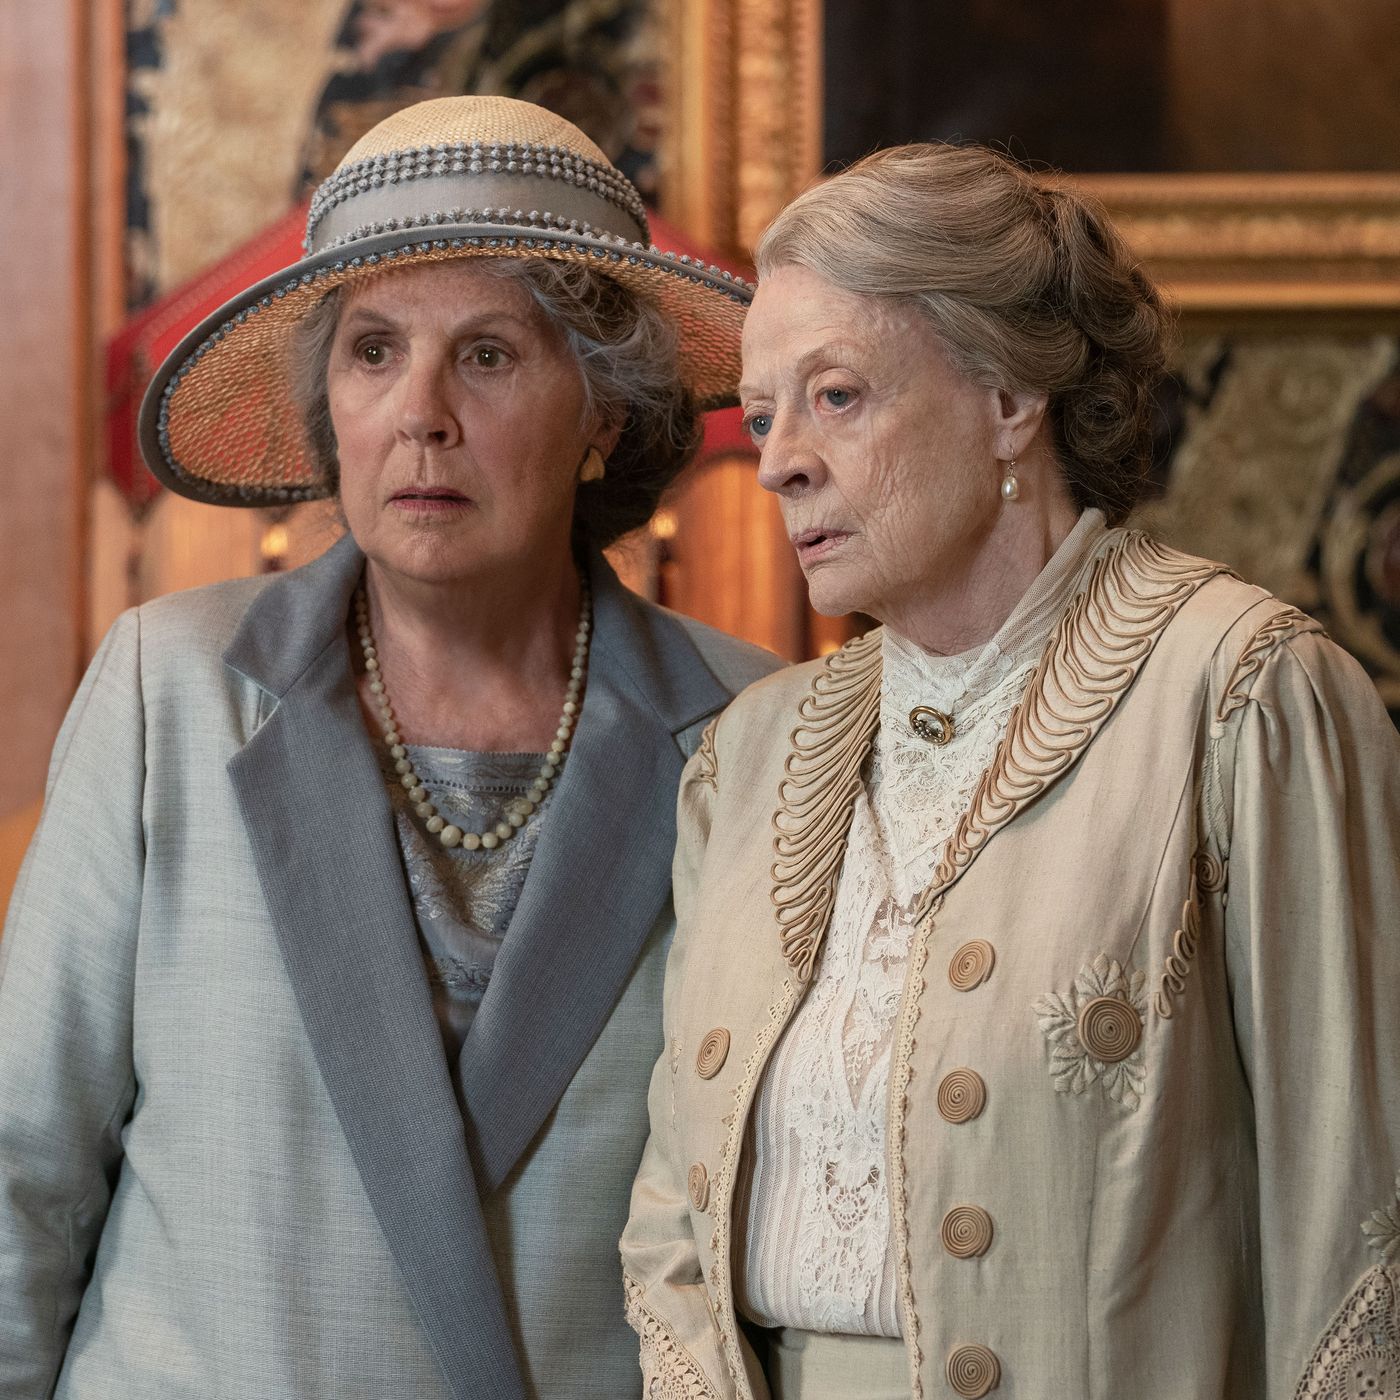 Downton Abbey: A New Era' Review